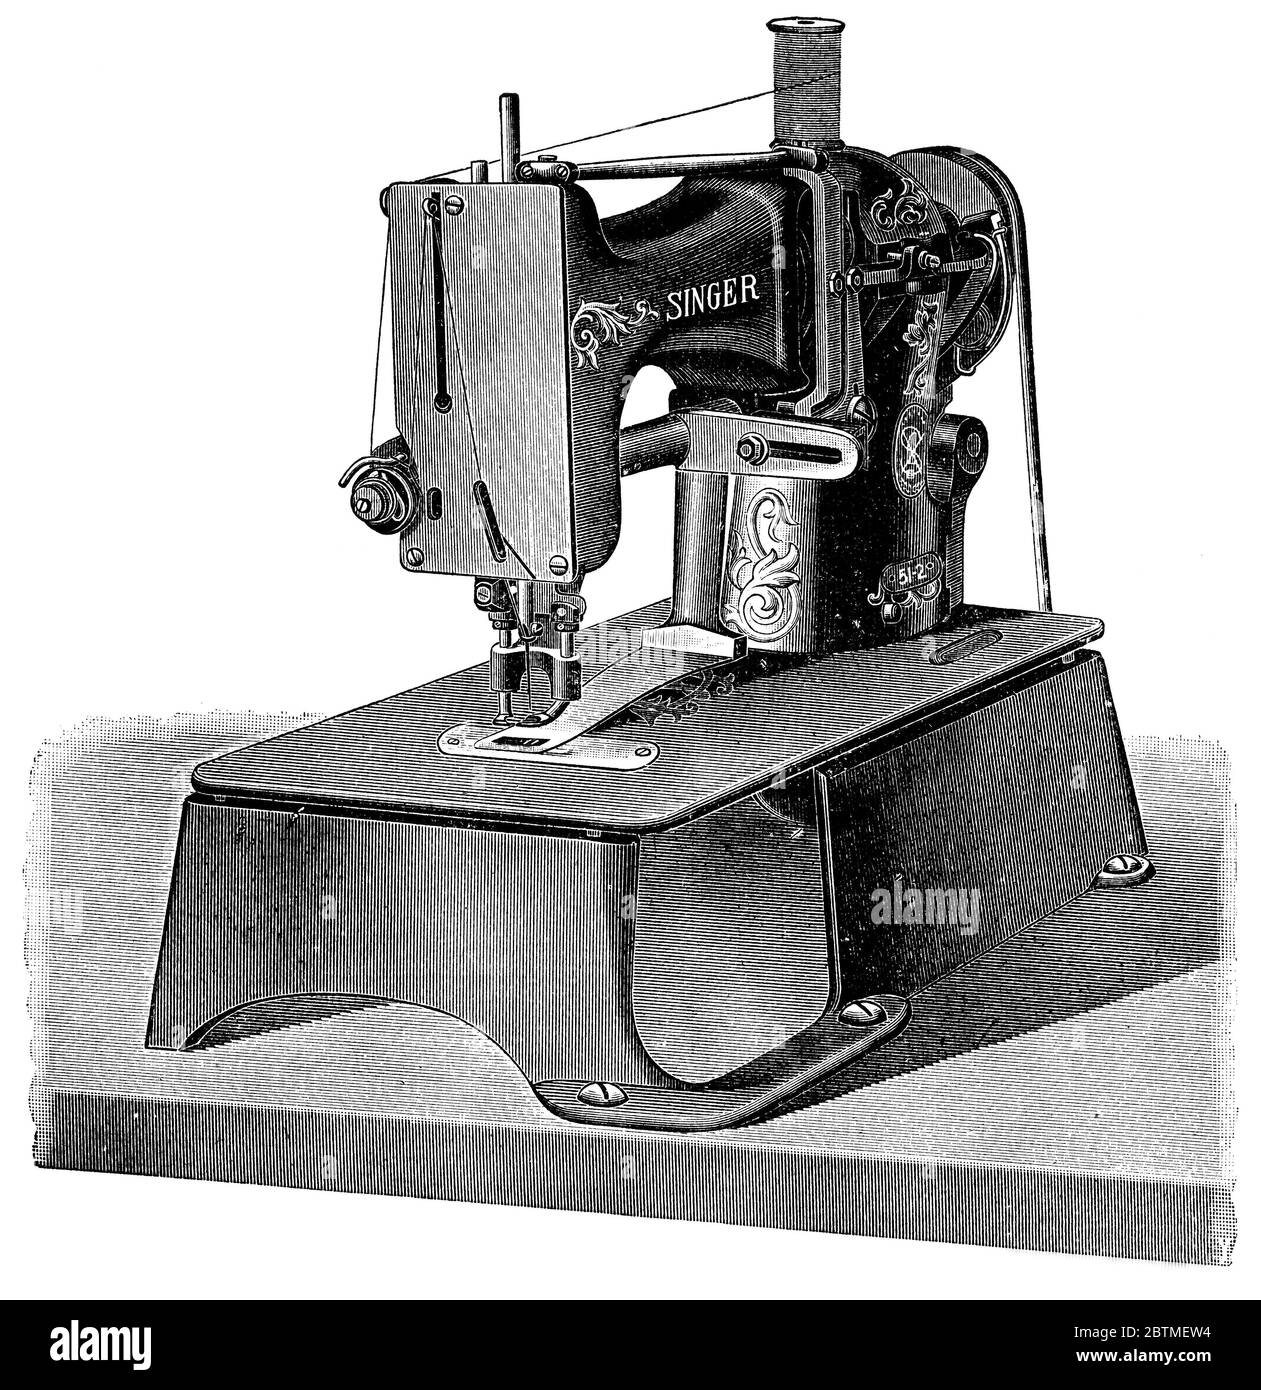 Macchina da cucire a sacco per bar di Singer. Illustrazione del 19 ° secolo. Sfondo bianco. Foto Stock